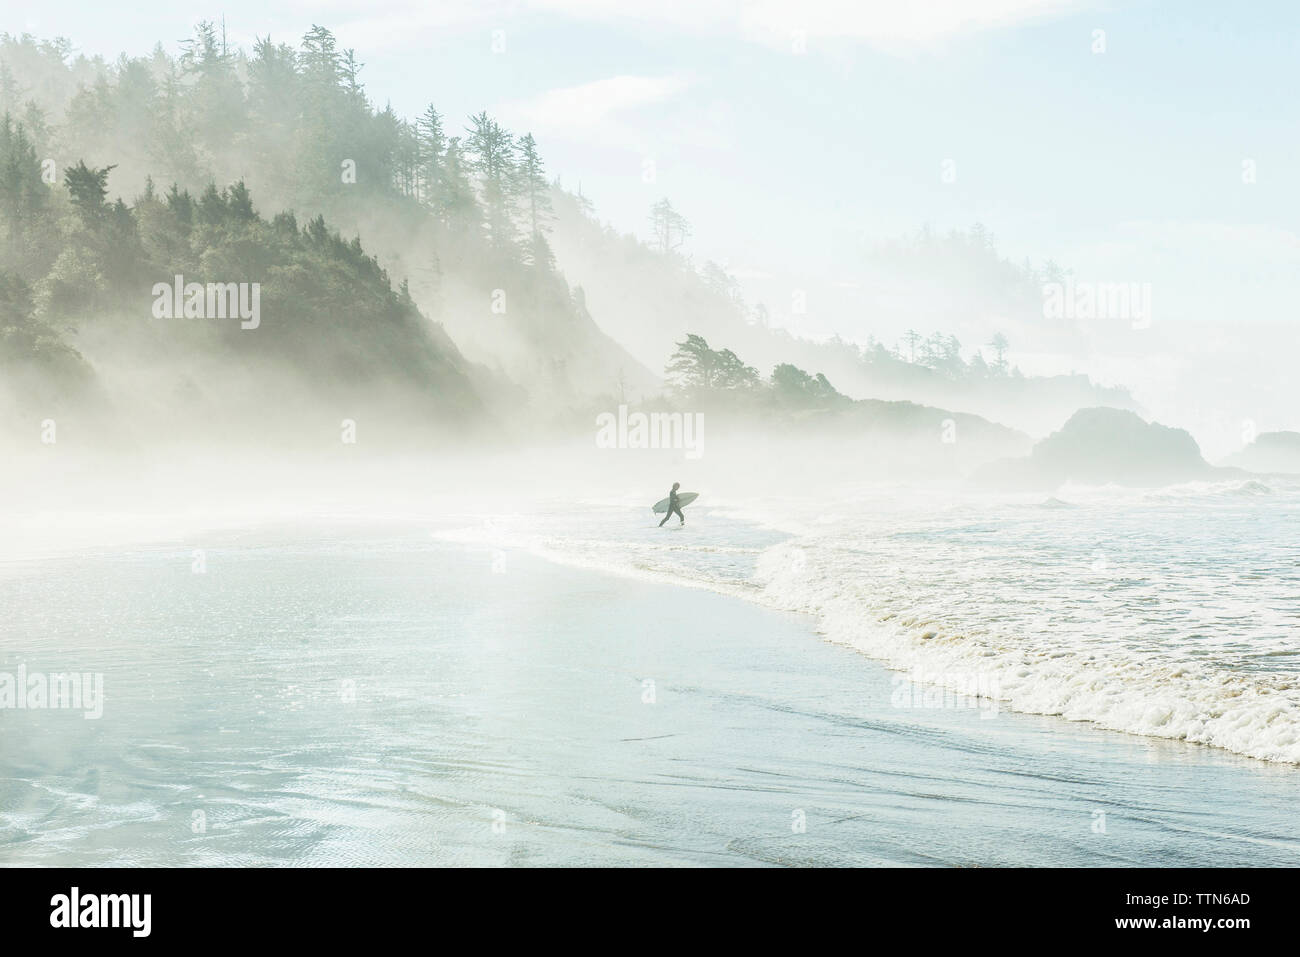 Hombre con tablas de surf caminando hacia el mar por la montaña durante la niebla Foto de stock